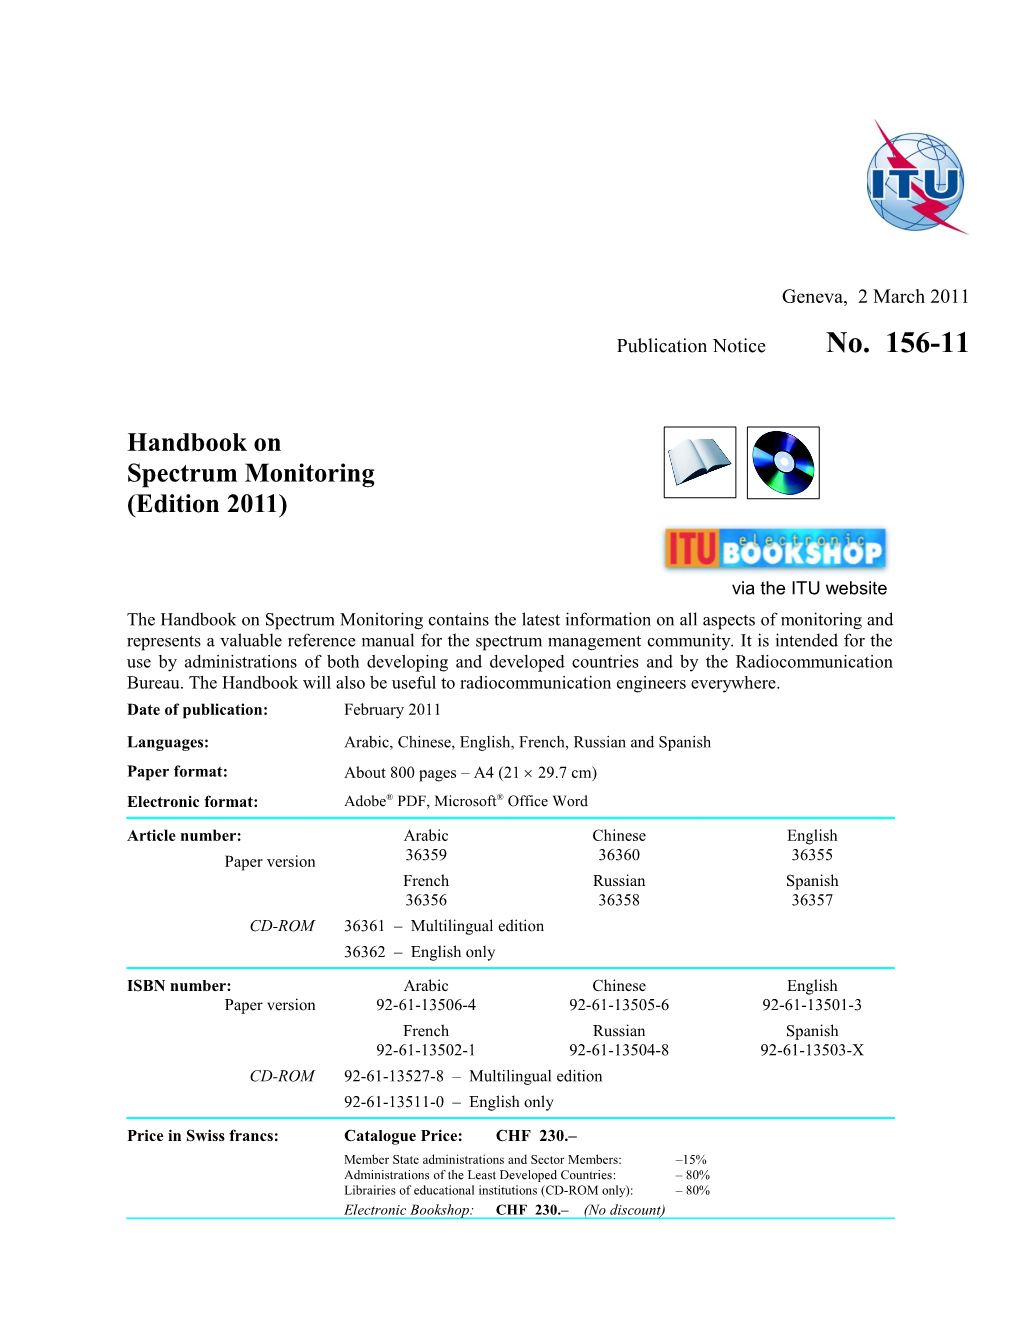 Publication Notice No. 156-02-Rev-04 Handbook Spectrum Monitoring Edition 2002